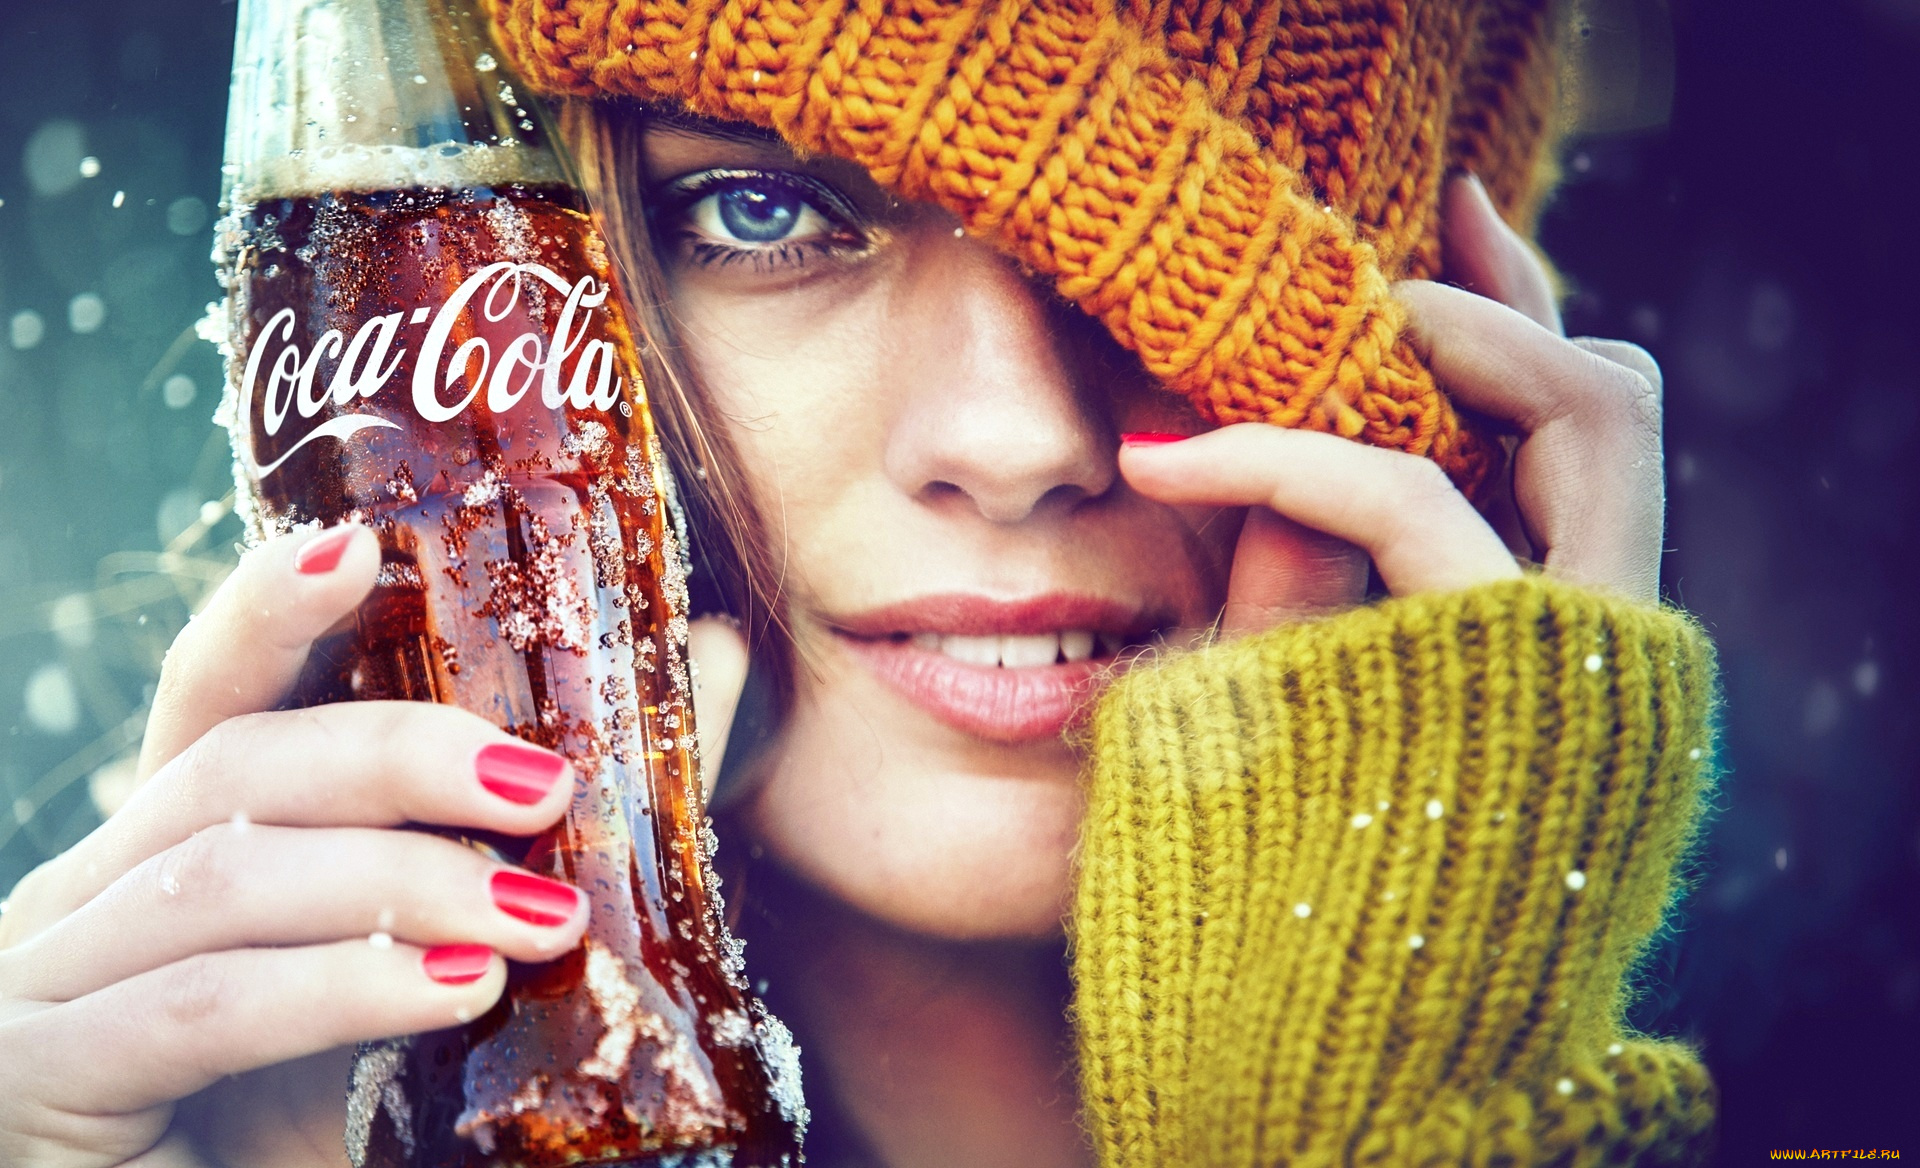 бренды, coca-cola, шарф, шапка, улыбка, лицо, кока-кола, девушка, напиток, бутылка